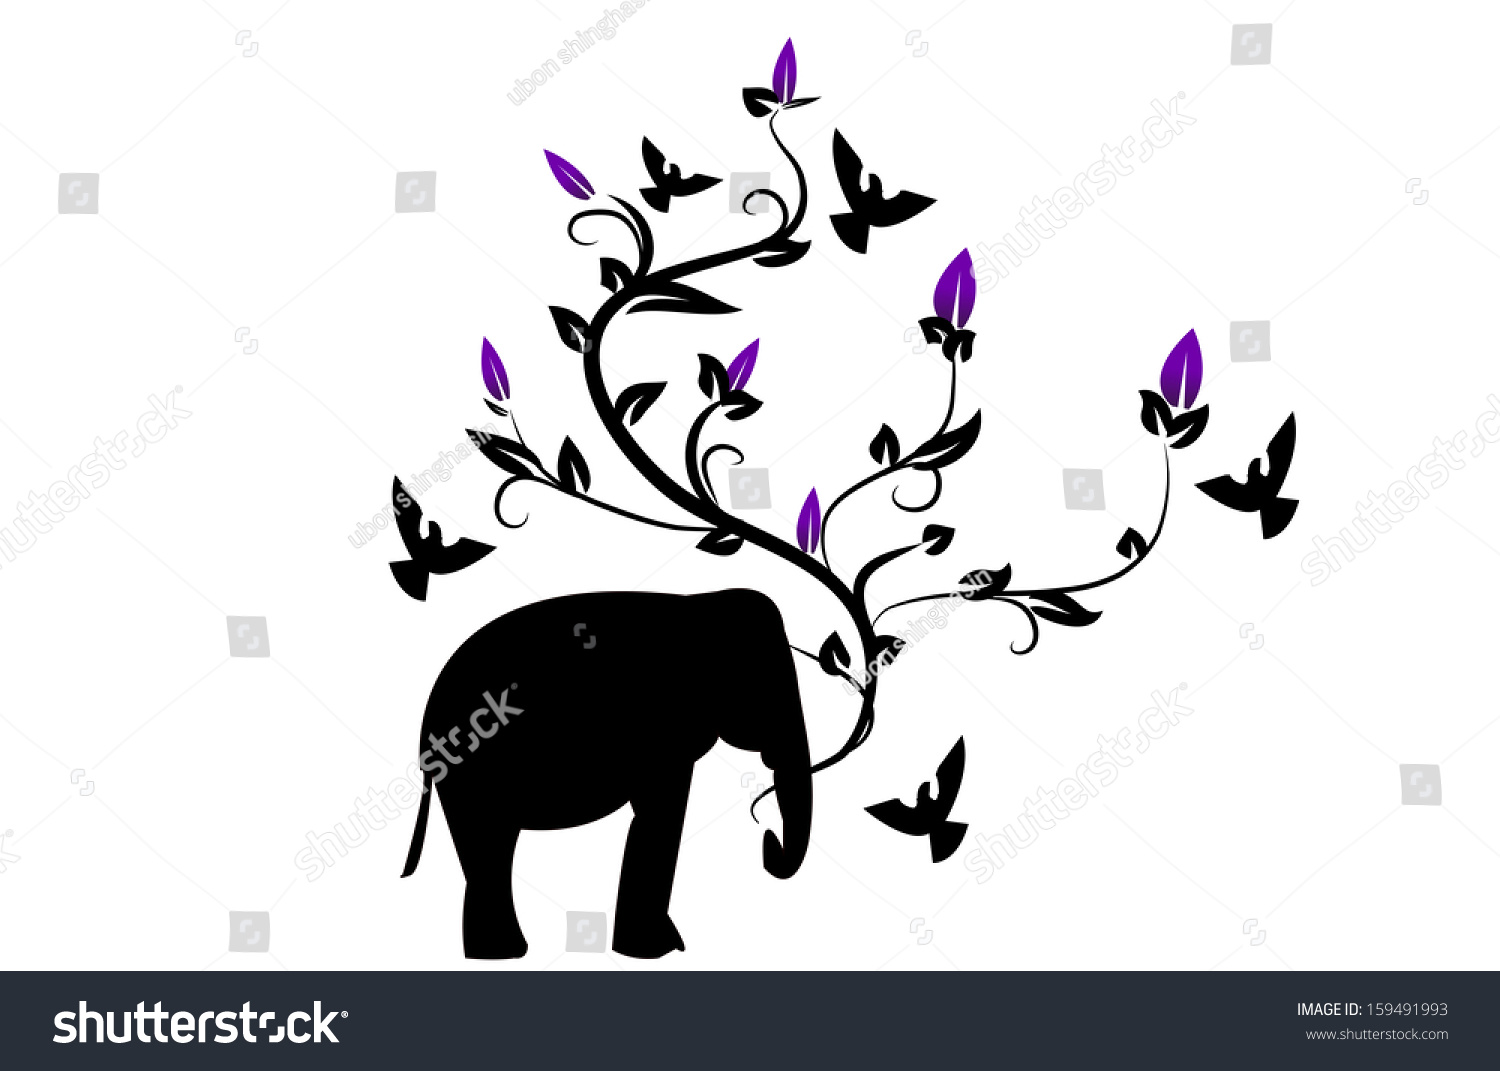 Elephant Flower Vector - 159491993 : Shutterstock